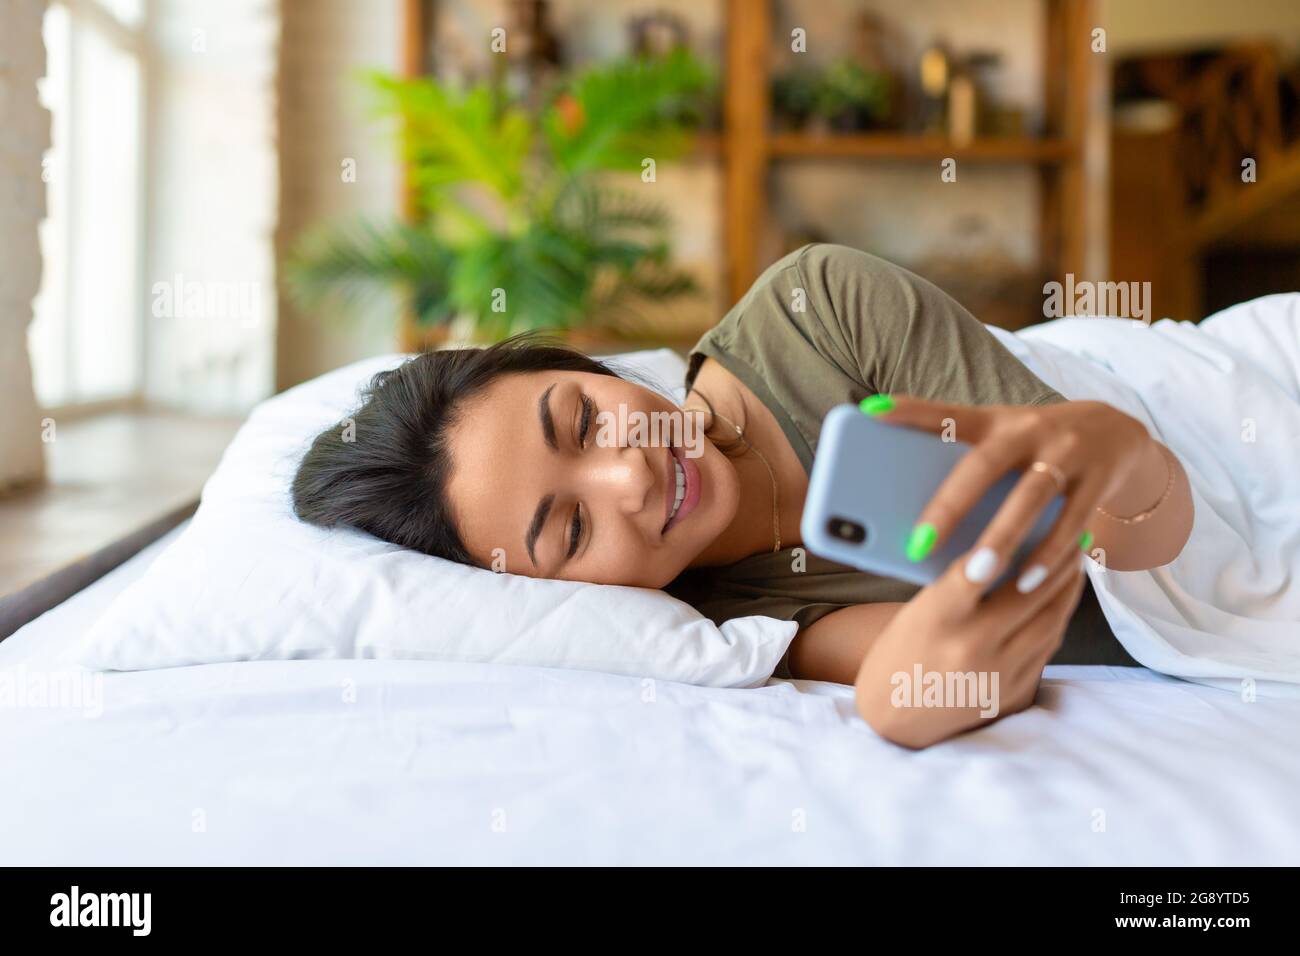 Une femme asiatique souriante est au lit avec un téléphone portable. Elle s'est réveillée et a vérifié les publications sur les médias sociaux. Concept de technologie moderne. Banque D'Images